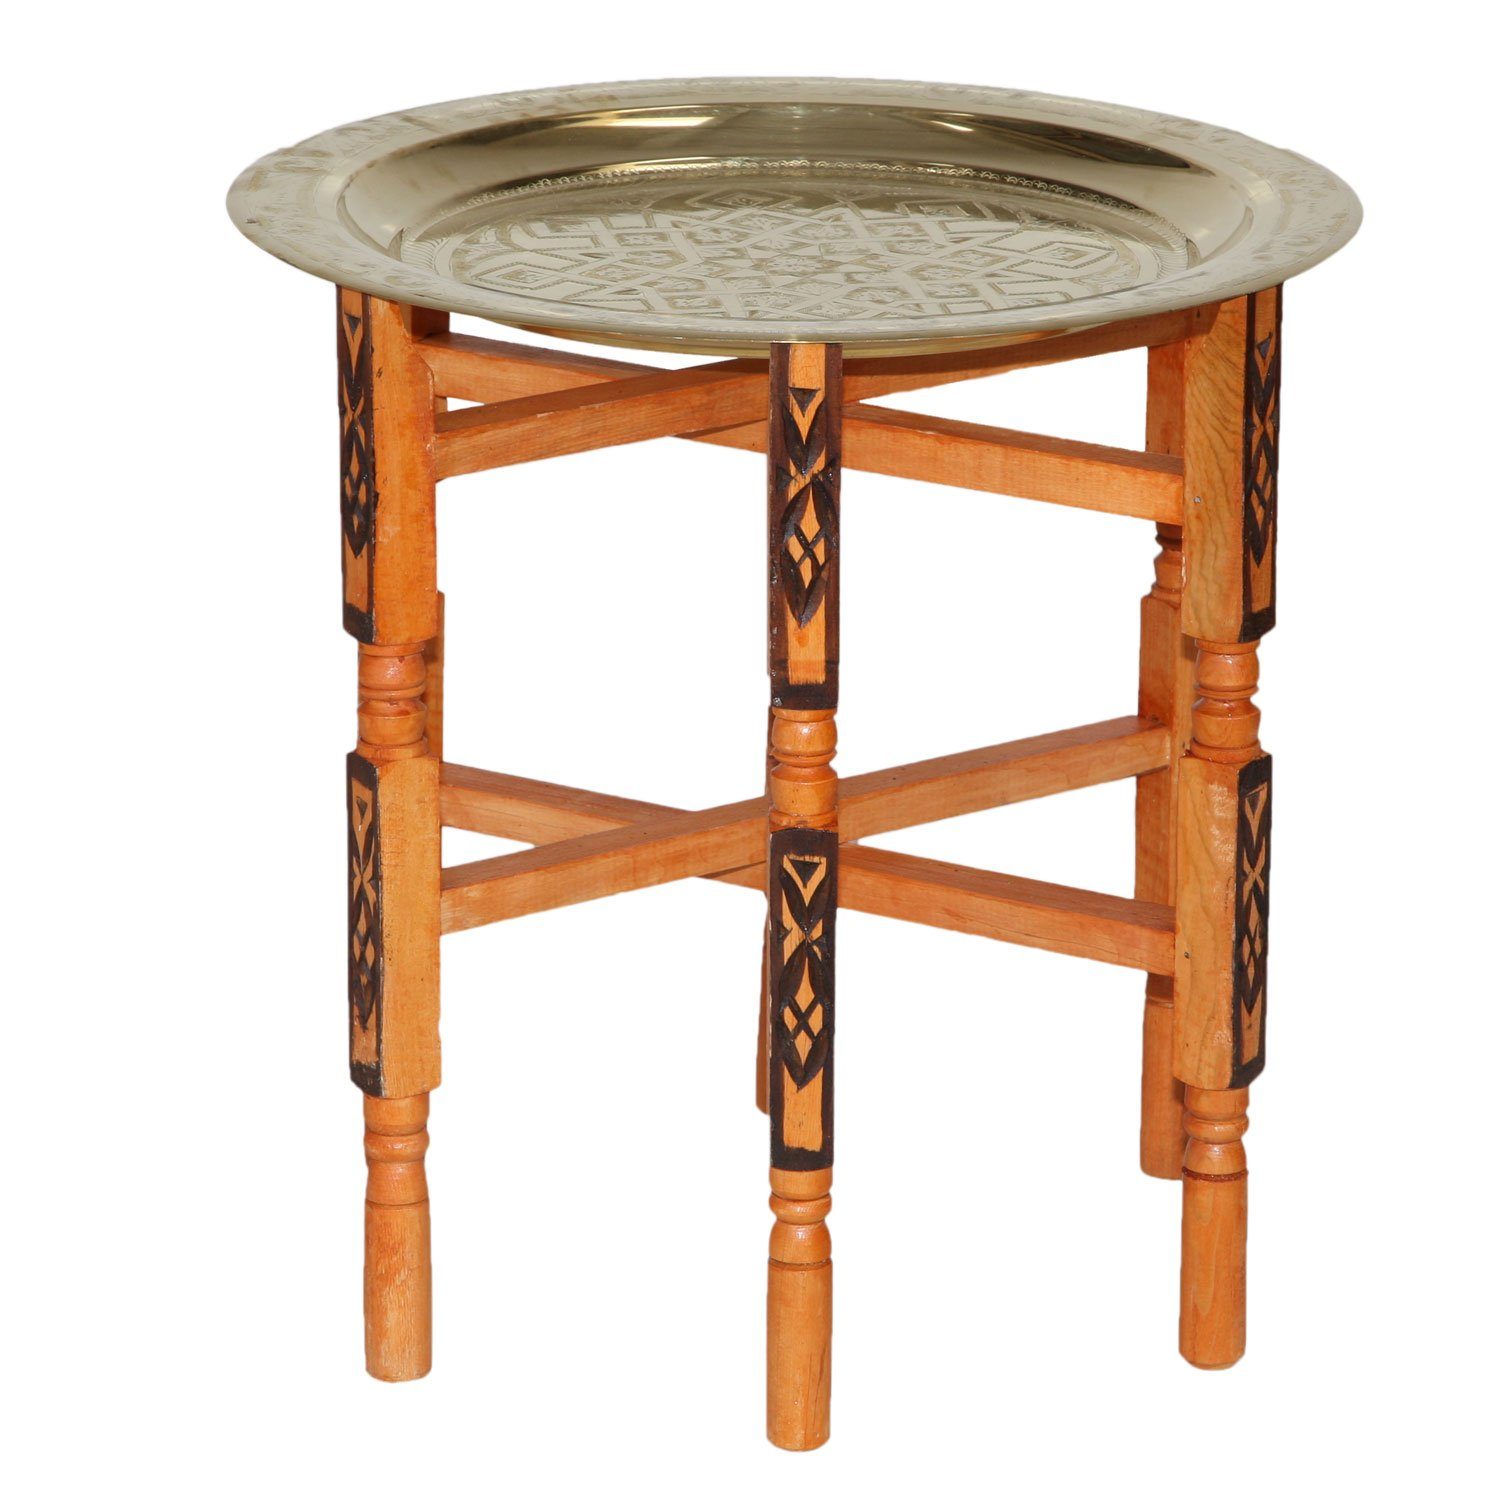 Casa Moro Beistelltisch Orientalischer Teetisch marokkanischer Beistelltisch Karam 60 mit Messing-Tablett Ø 60 cm, klappbarer Holz-Tisch mit Serviertablett Farbe Gold, TA6063, Handmade